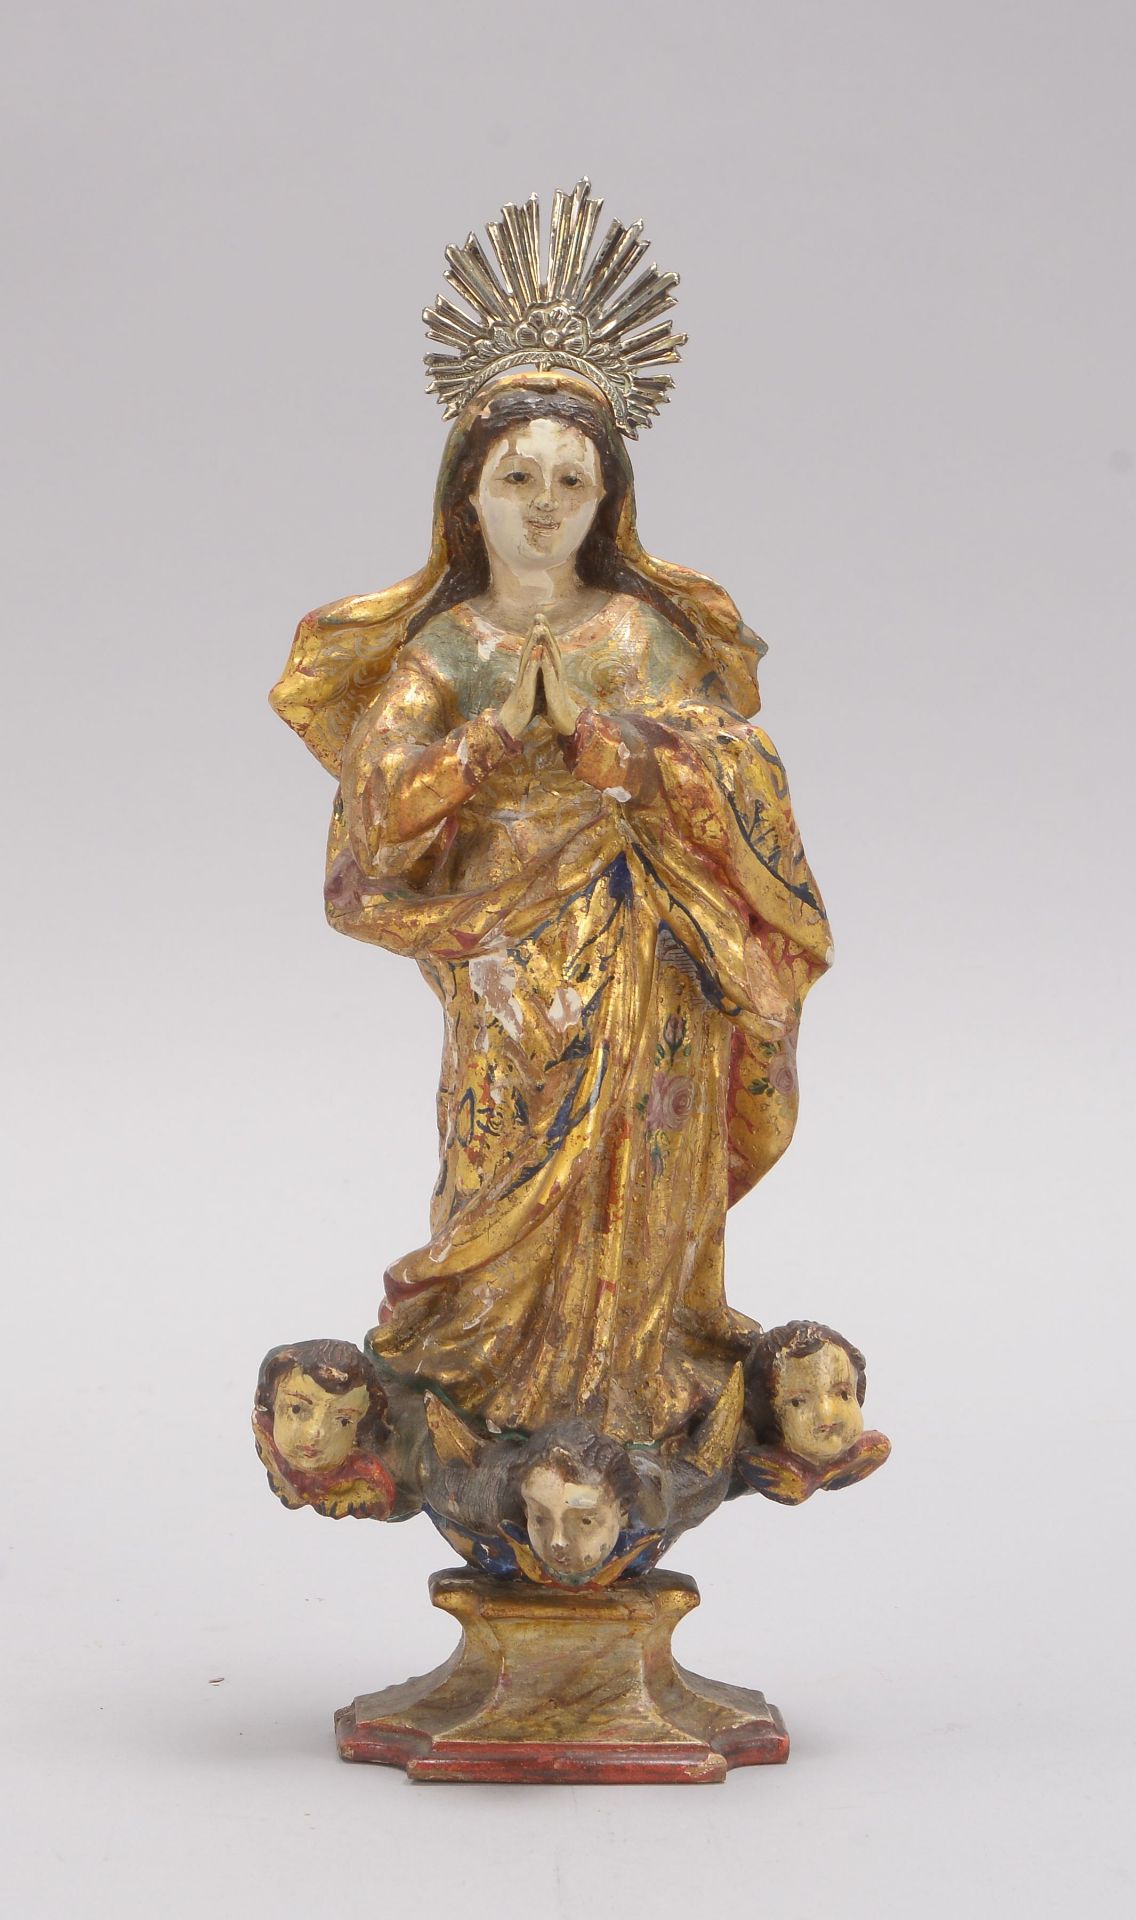 Heiligenfigur (wohl Südamerika), antik, 'Madonnendarstellung', mehrfarbig gefasst/goldstaffiert